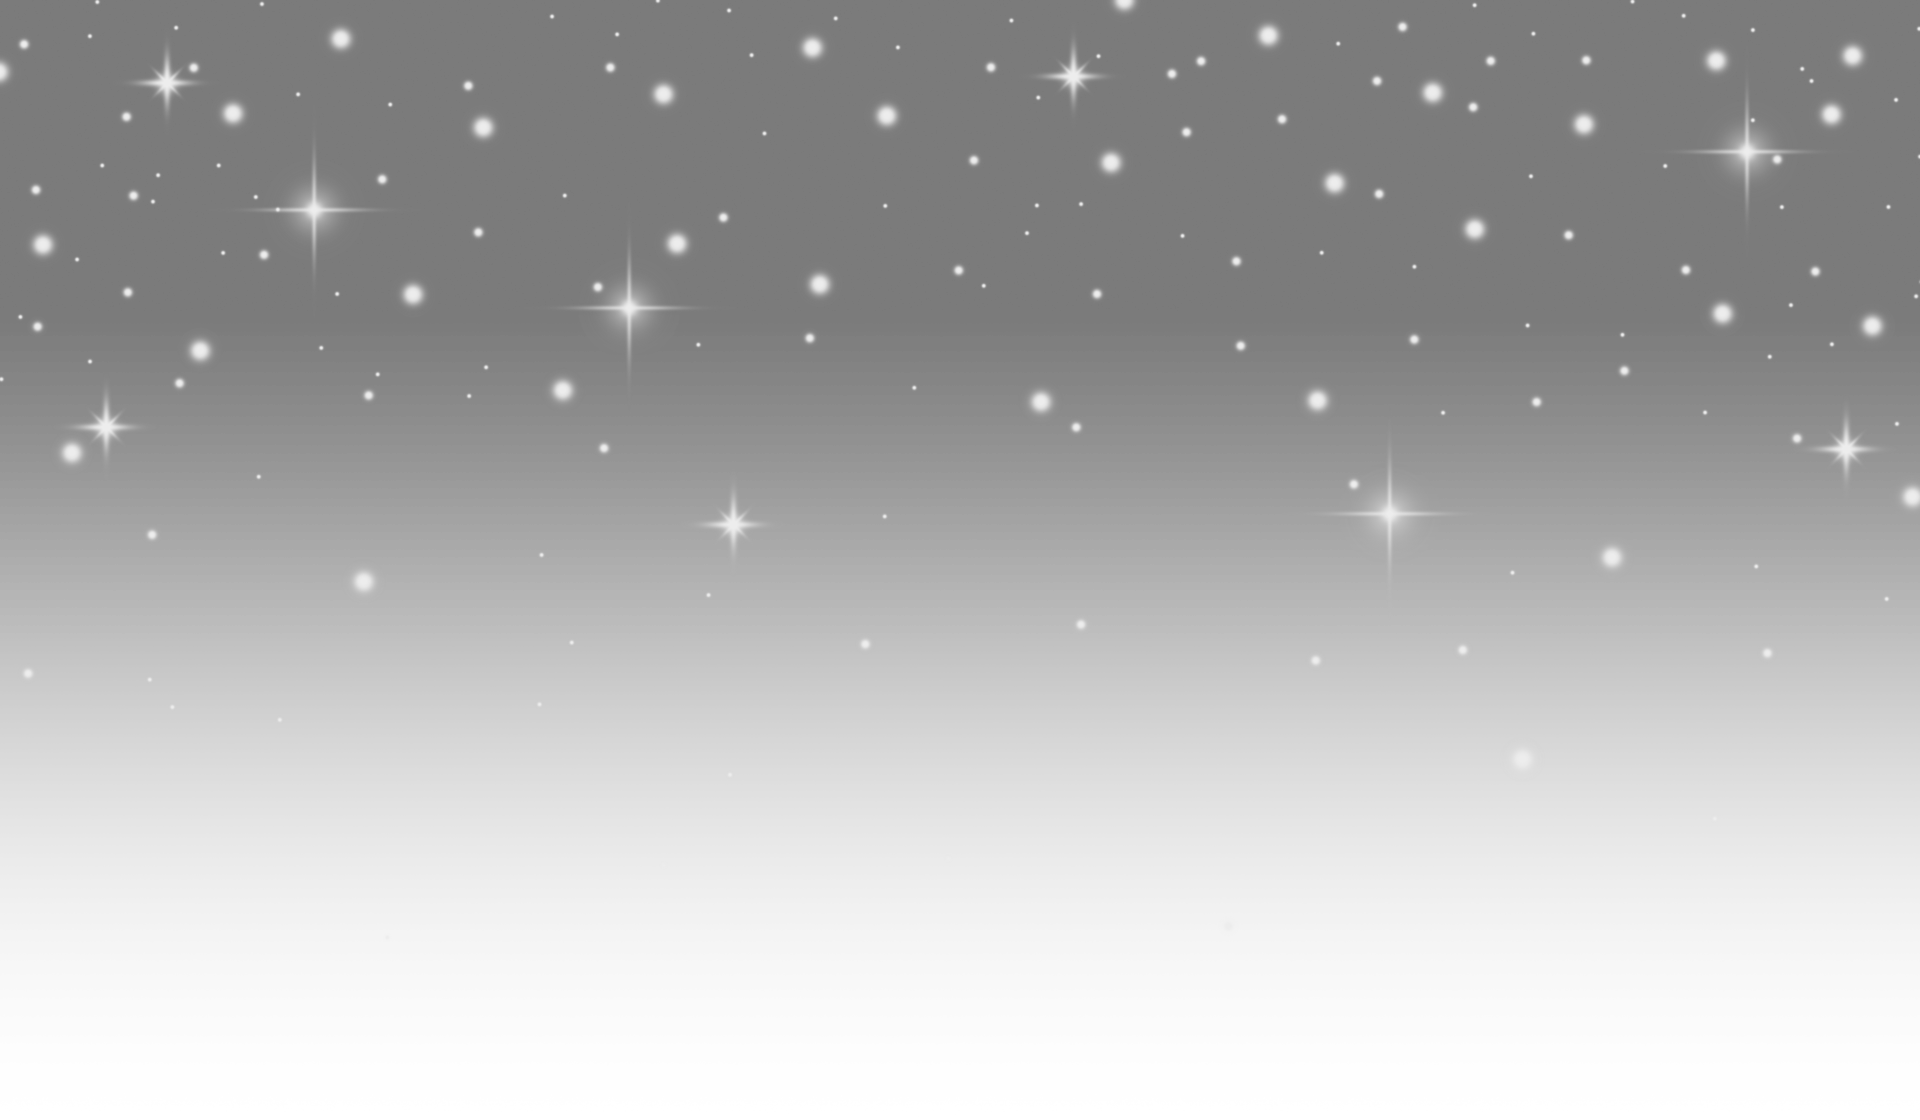 Star: Các ngôi sao luôn lấp lánh và gợi nhắc về một thế giới bí ẩn và lãng mạn. Hãy xem bức tranh liên quan để khám phá tinh túy của sự ấn tượng và kỳ diệu của chúng!